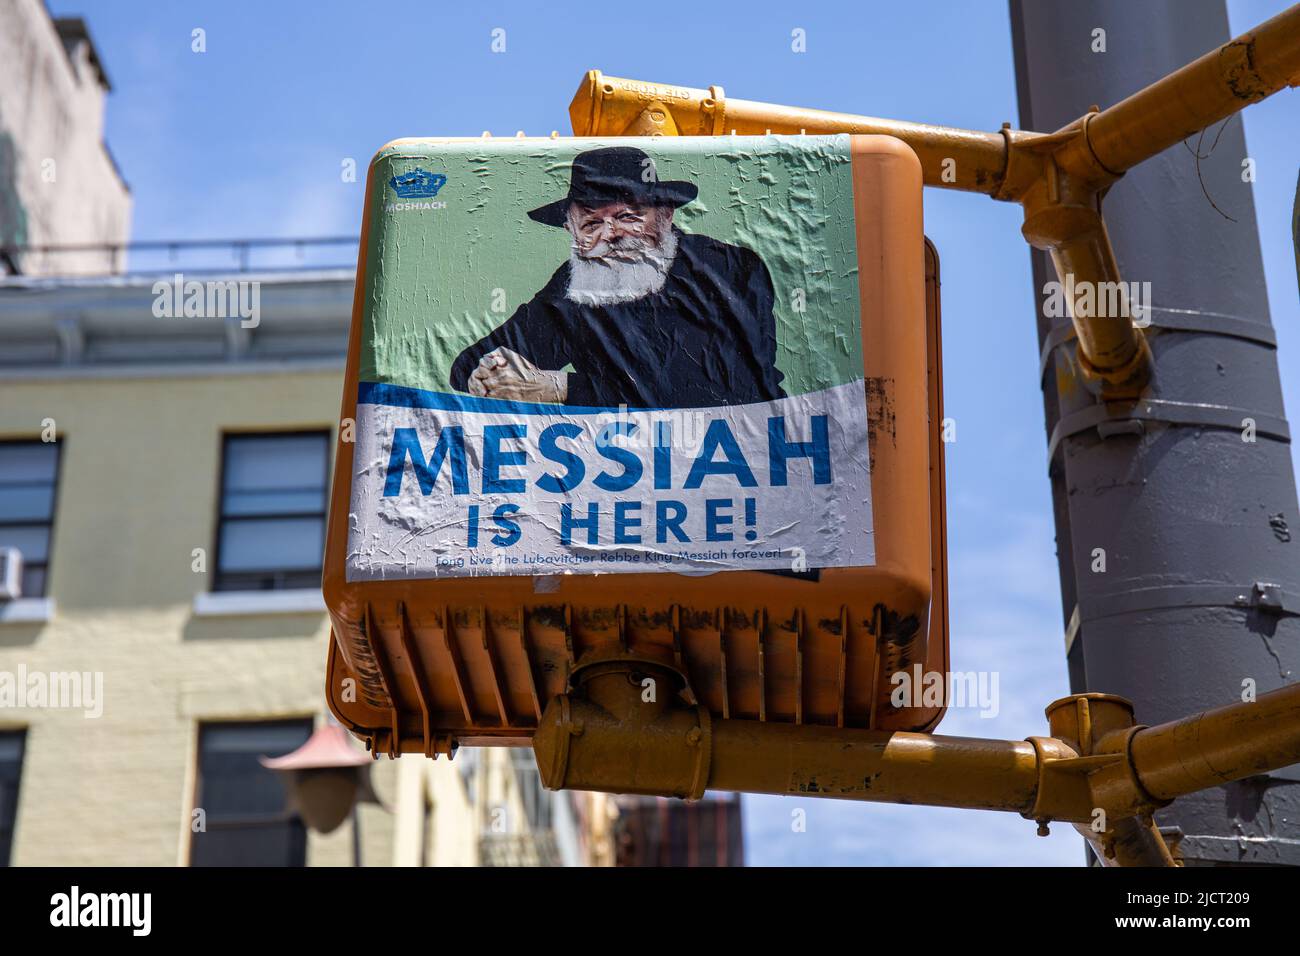 Der Messias ist hier! Plakat von Rabbi Menachem Mendel Schneerson, dem messias der Chabad-Lubavitch-Gemeinde, an der Ampel in New York City, USA. Stockfoto